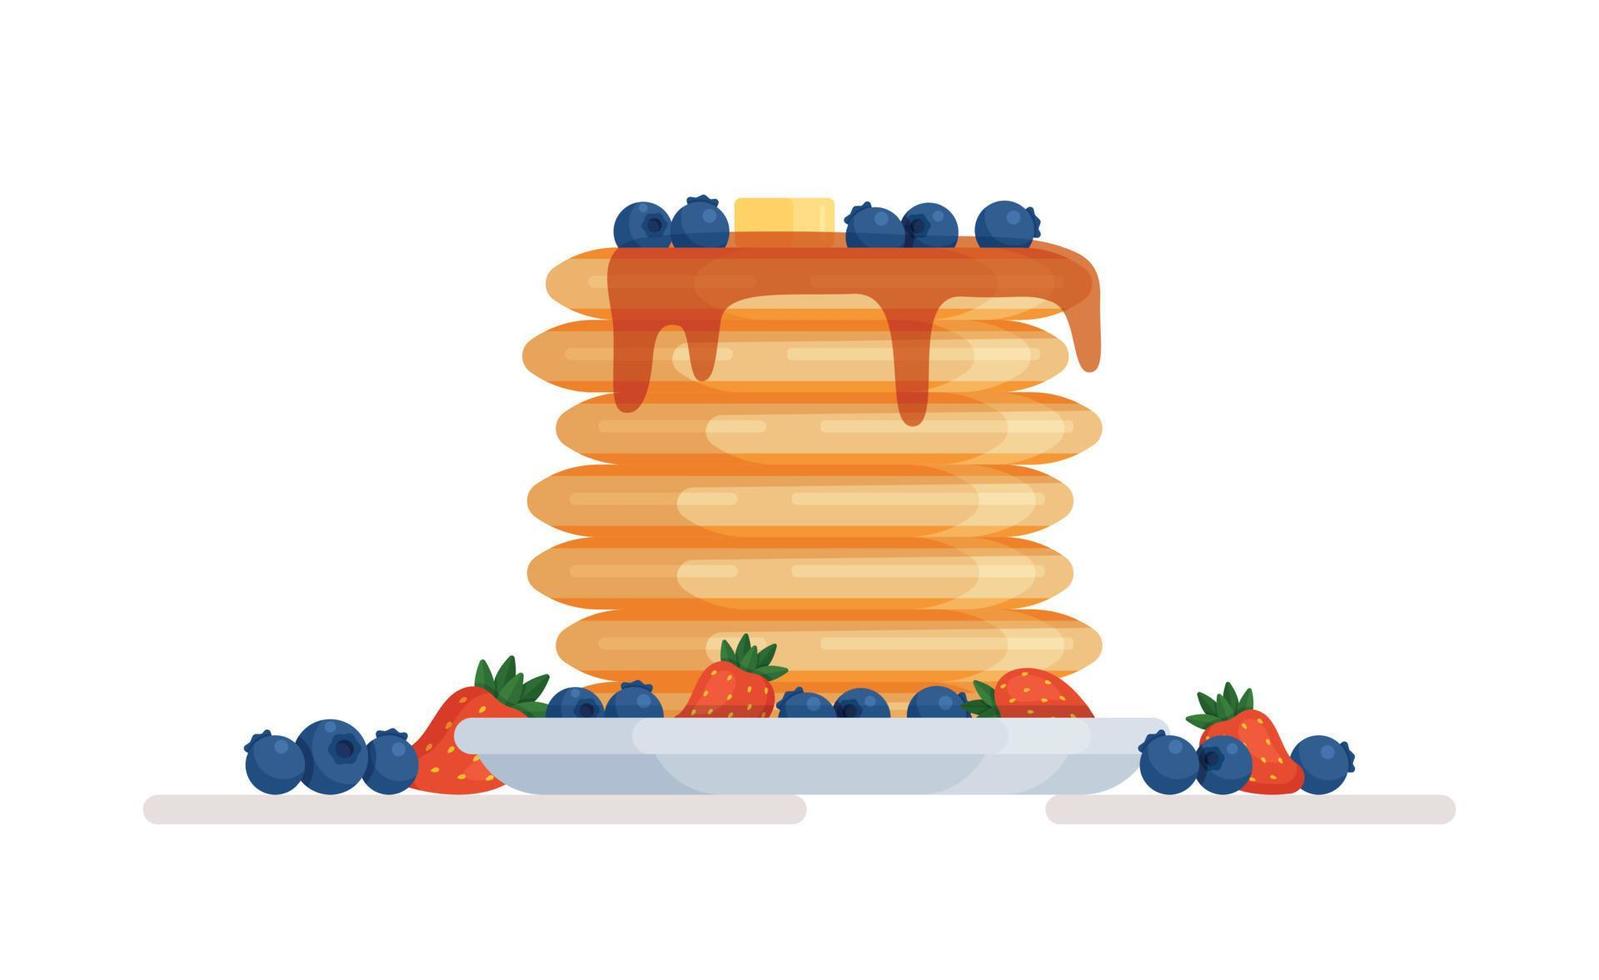 vektor illustration av pannkakor med bär. pannkakor med blåbär och jordgubbar på en vit platta.